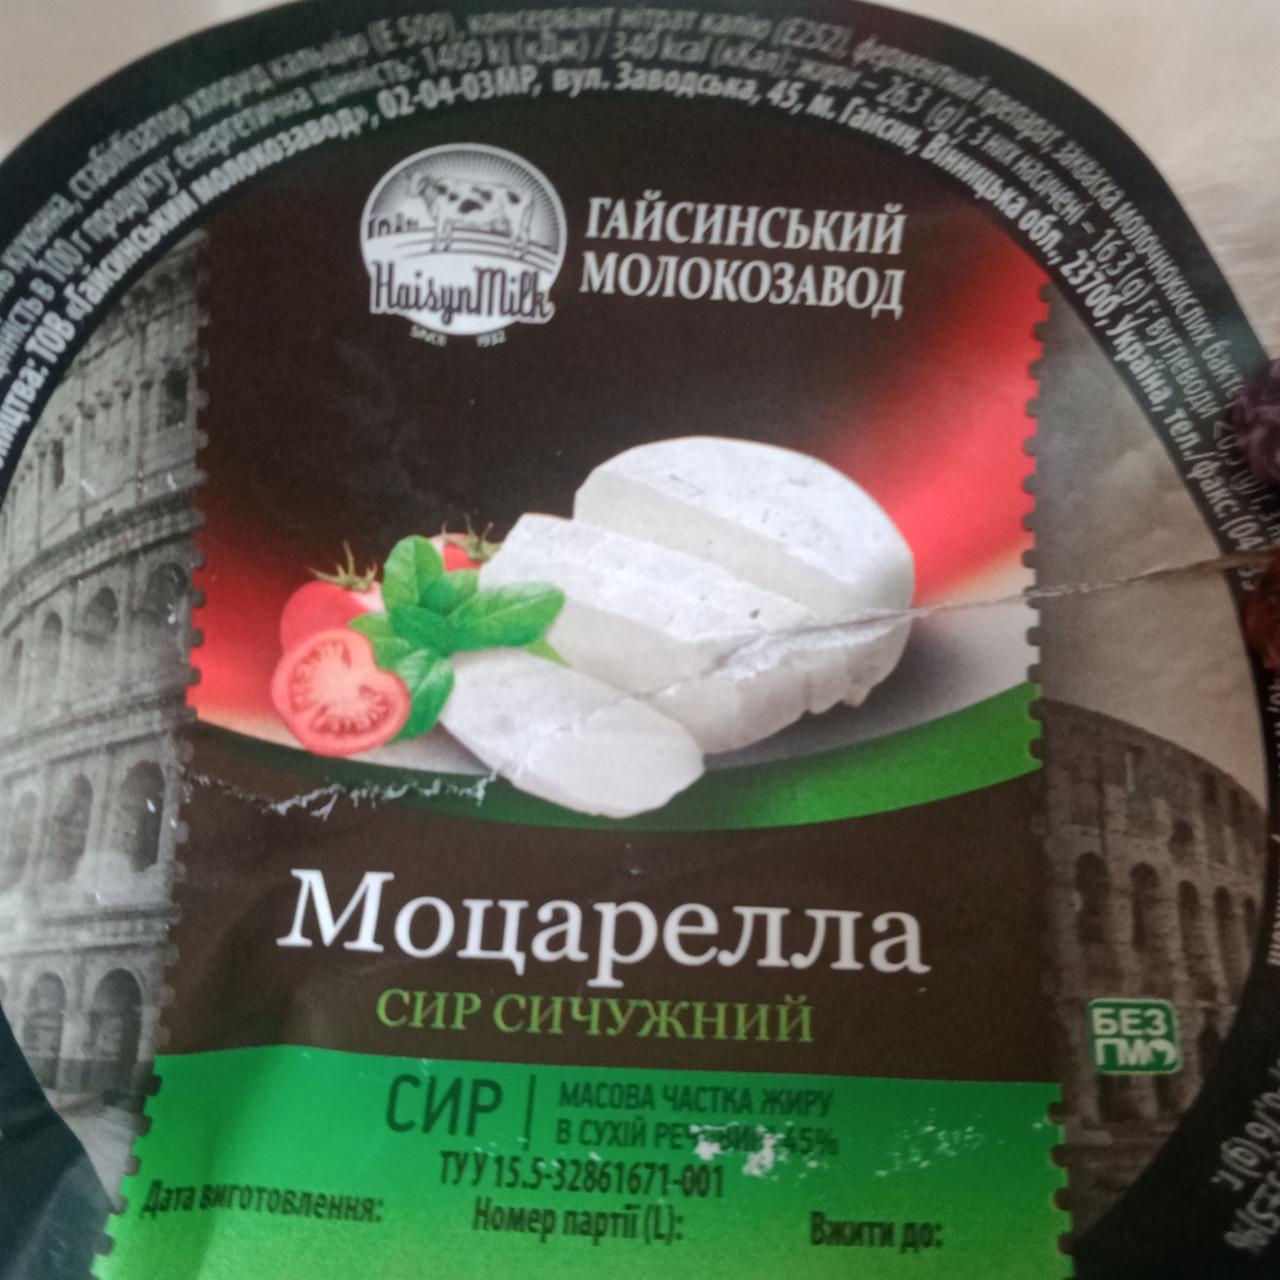 Фото - Cыр сычужный 45% Моцарелла Гайсинский молокозавод